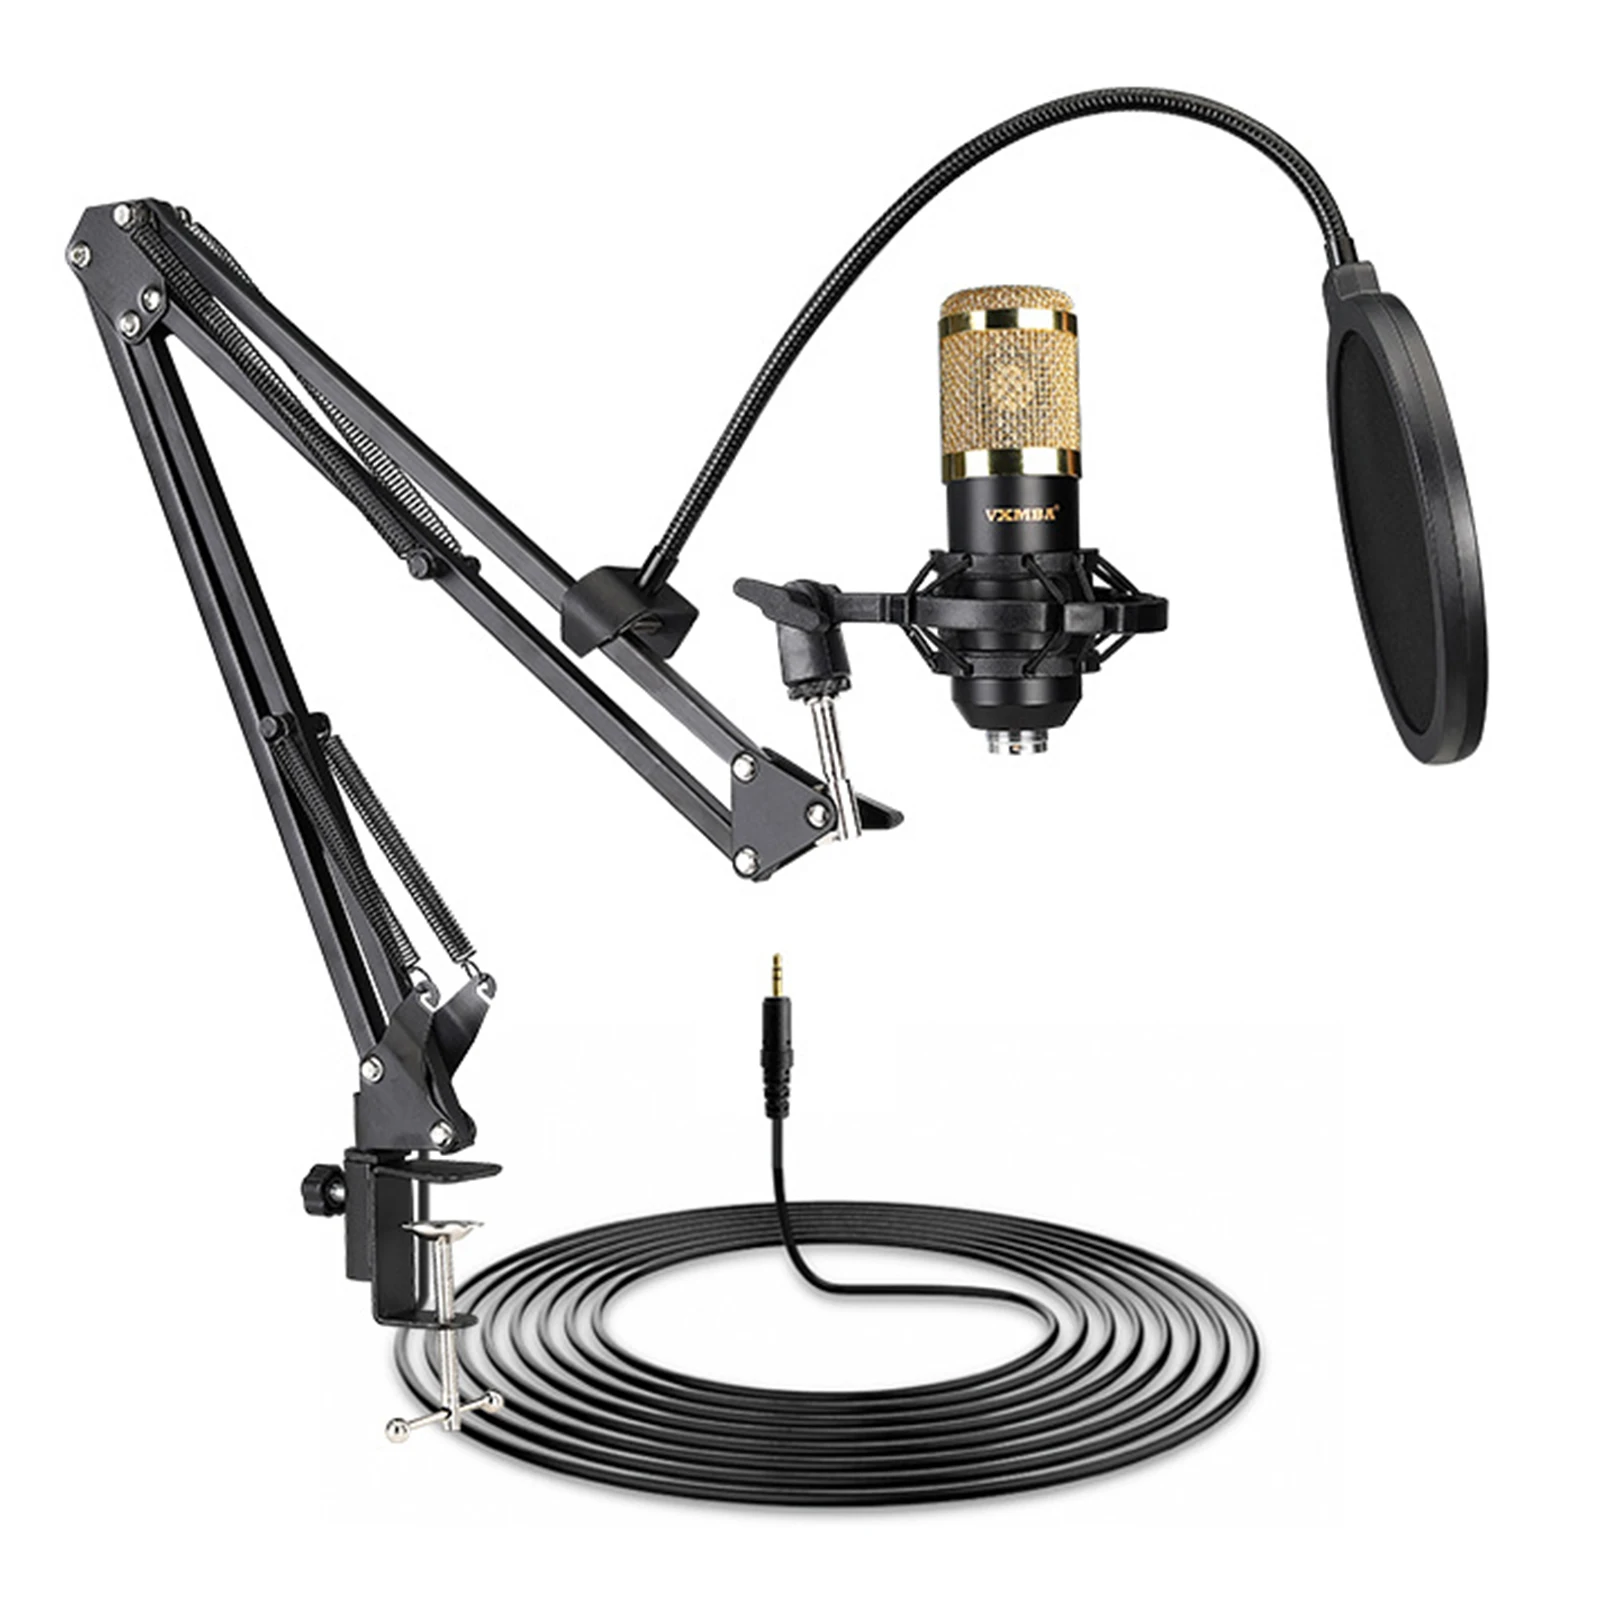 

Vxmba Подкаст профессиональный конденсаторный микрофон BM-800 микрофон с V8 звуковая карта стенд студийное